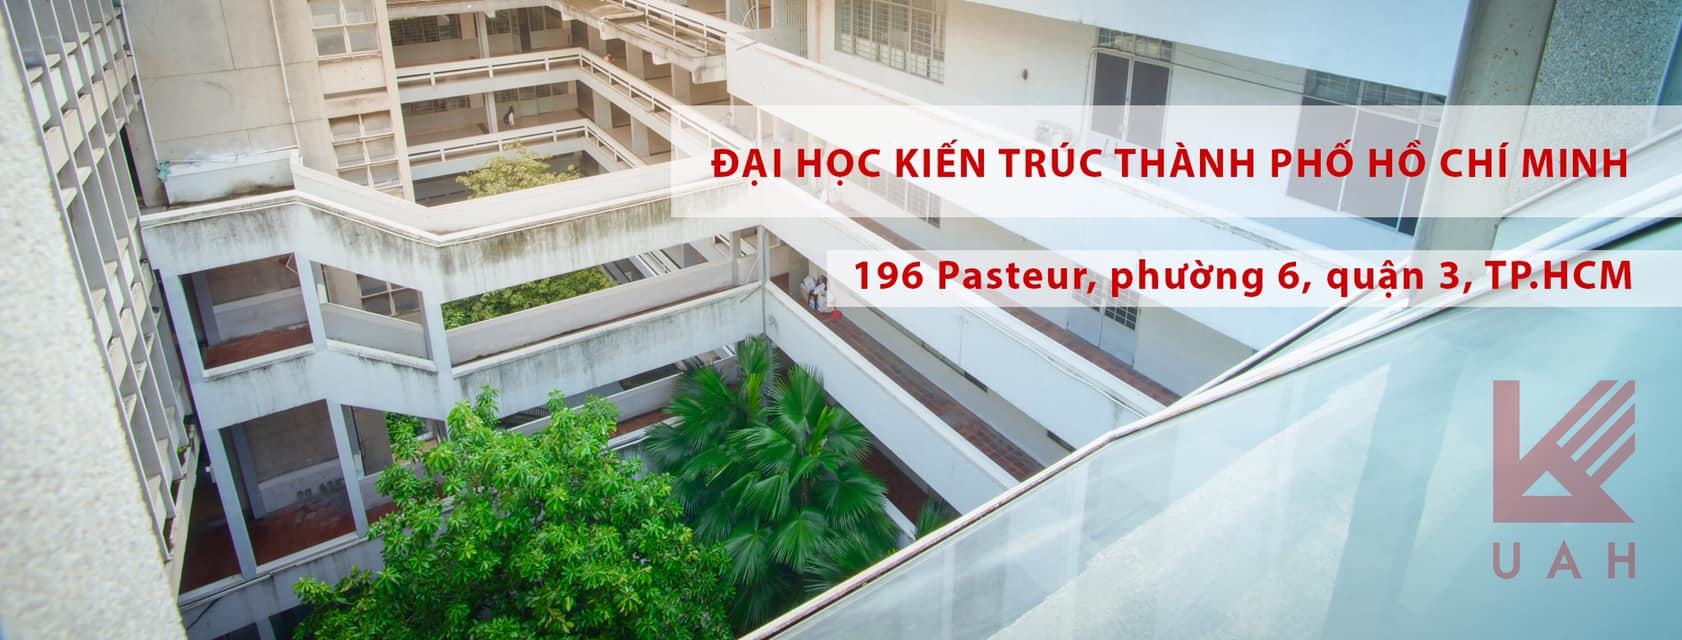 Trường Đại học Kiến trúc Thành phố Hồ Chí Minh ảnh 1